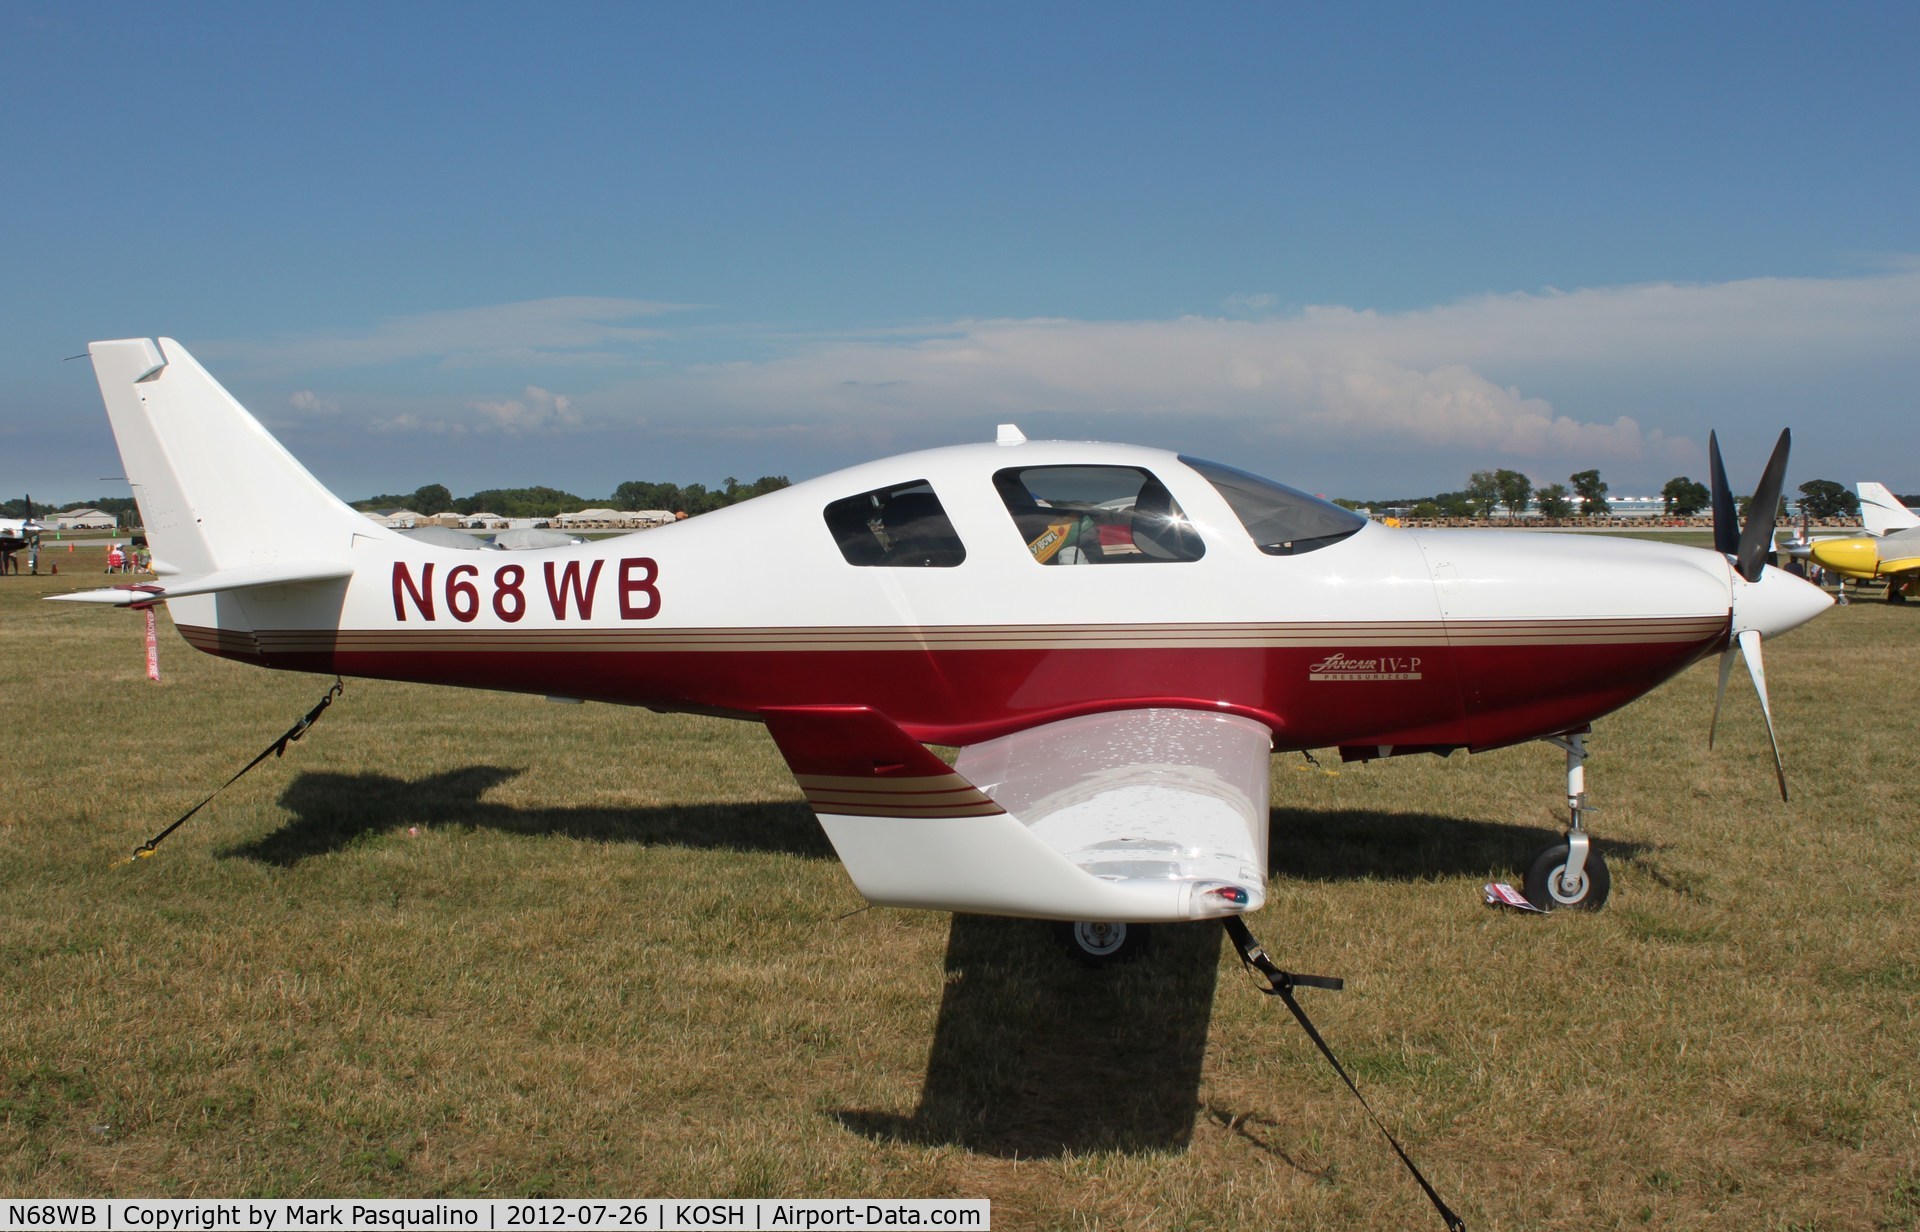 N68WB, 2003 Lancair IV-P C/N LIV-341, Lancair IV-P